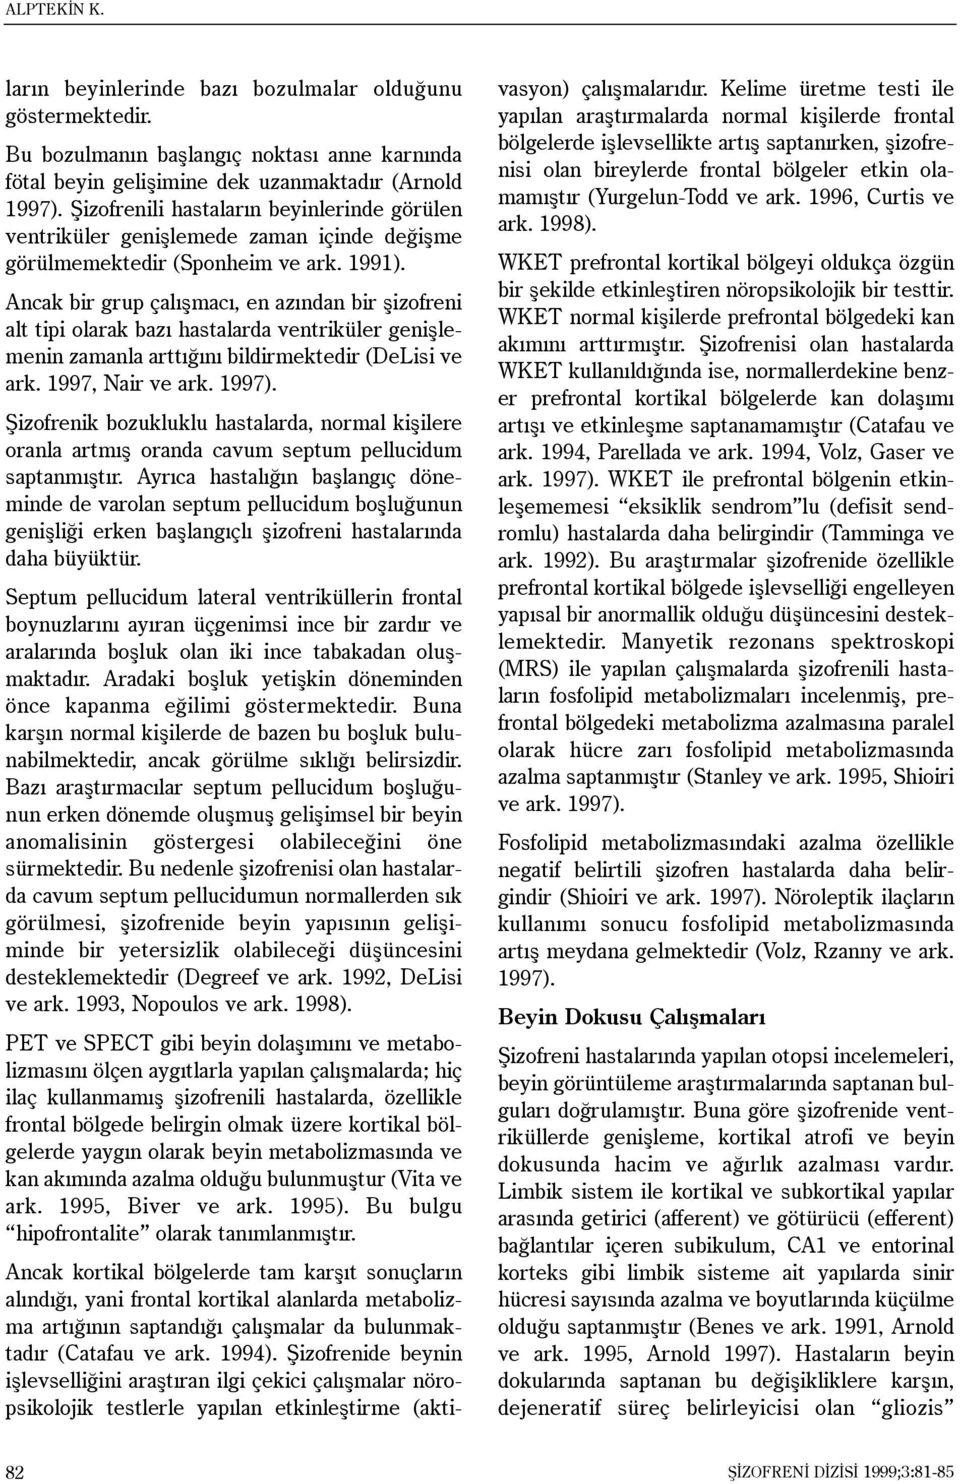 Ancak bir grup çalýþmacý, en azýndan bir þizofreni alt tipi olarak bazý hastalarda ventriküler geniþlemenin zamanla arttýðýný bildirmektedir (DeLisi ve ark. 1997, Nair ve ark. 1997).